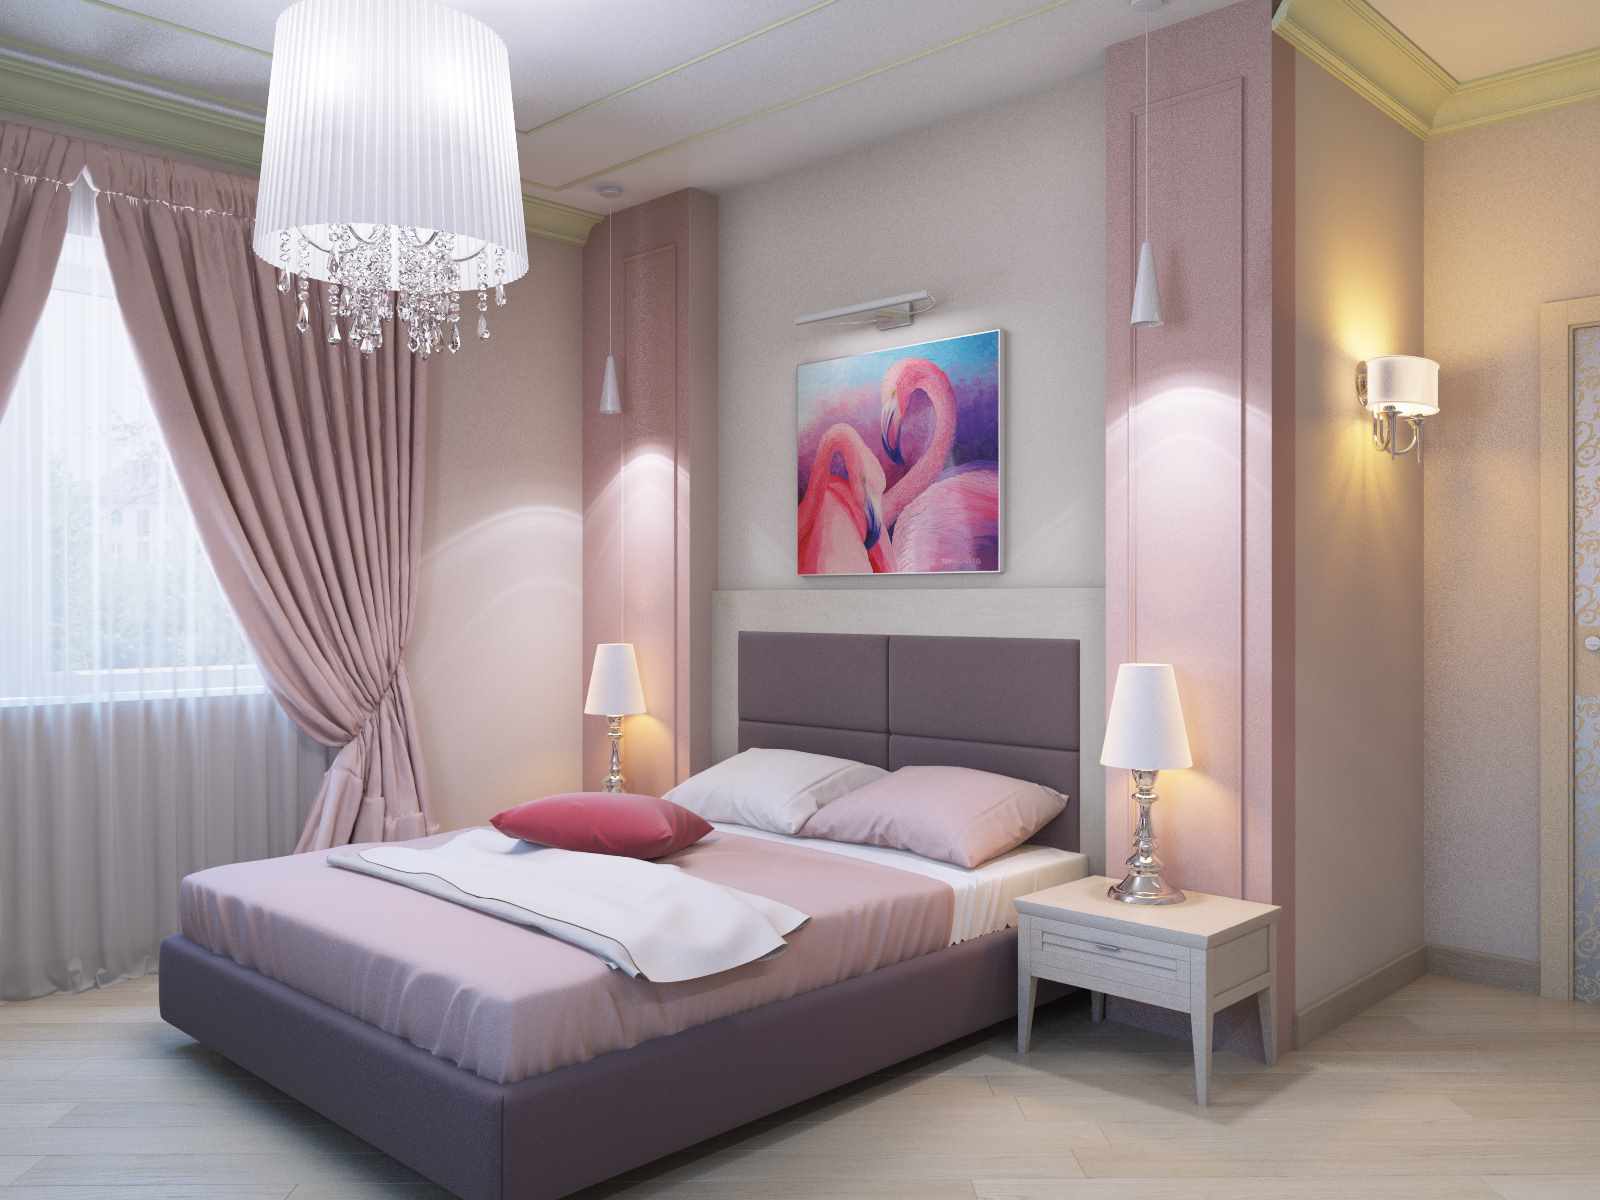 Un esempio di un interno luminoso della camera da letto